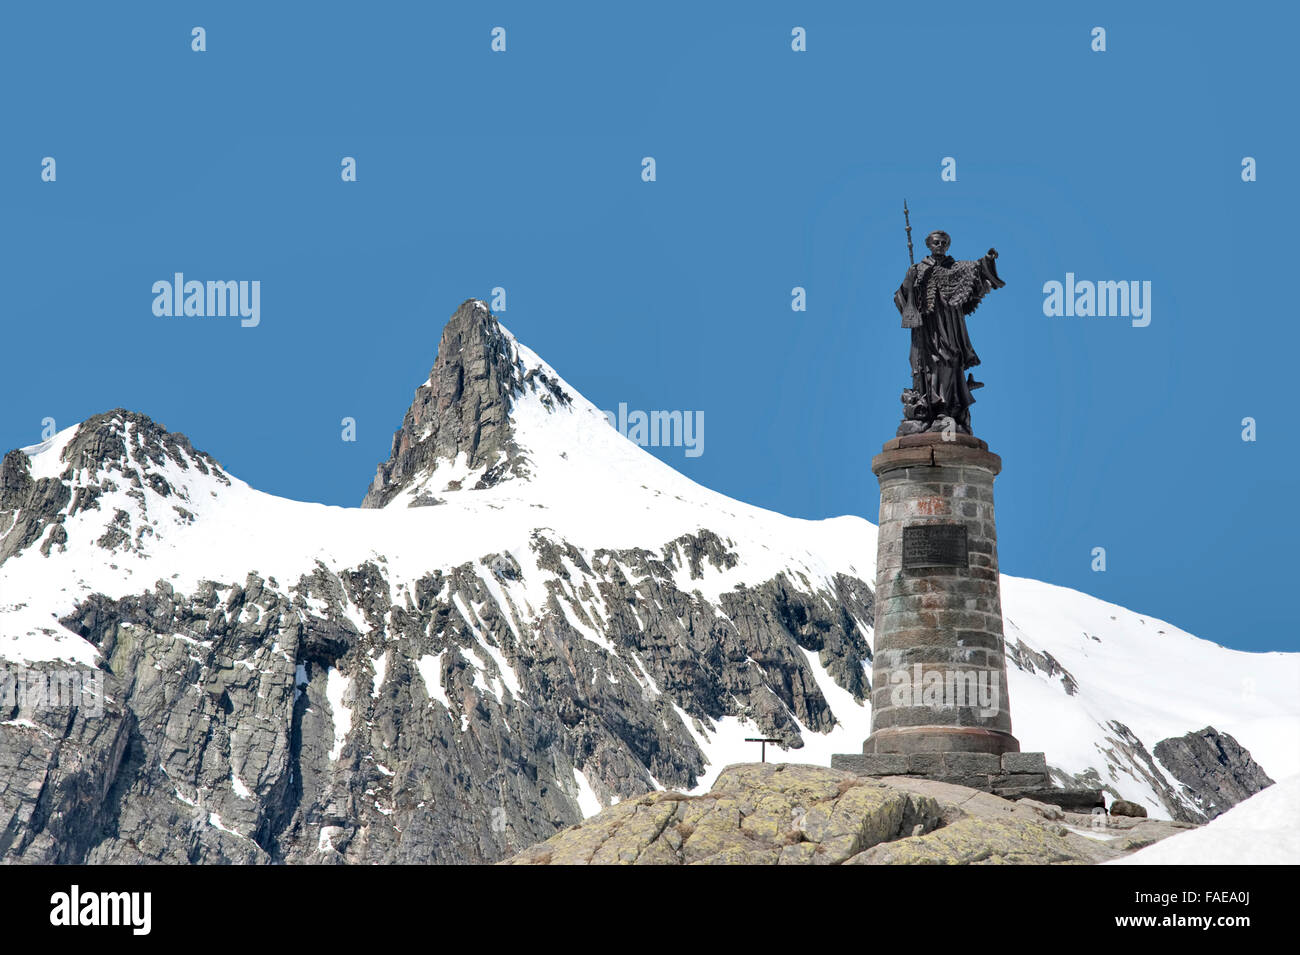 Statua di San Bernardo sulla sommità del Gran San Bernardo, al confine di Italia e Svizzera Foto Stock